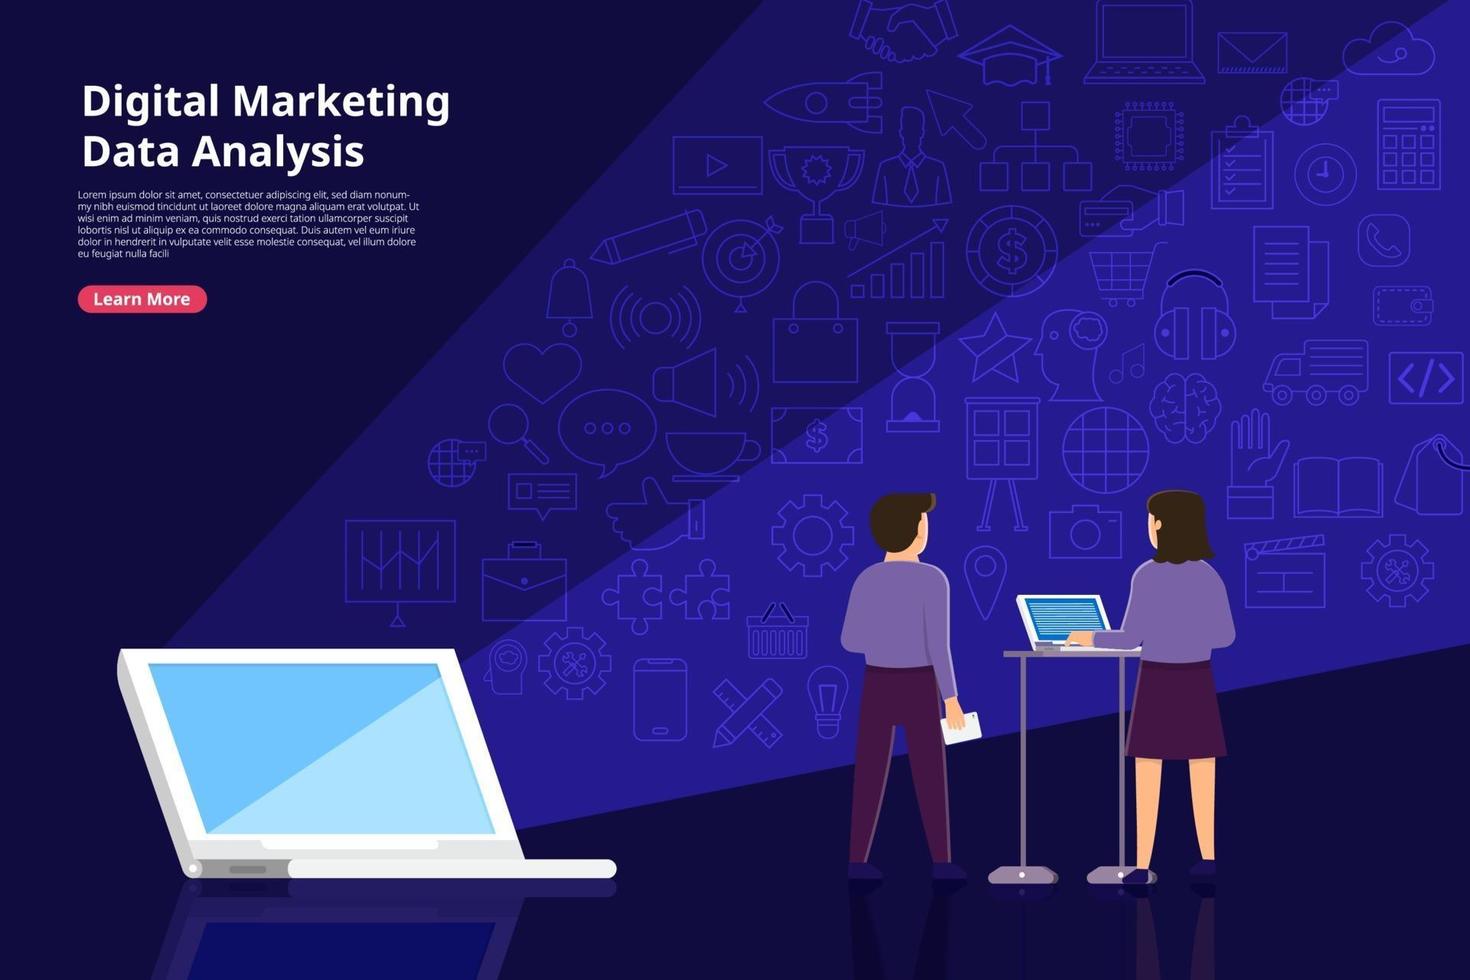 analisi di marketing digitale vettore